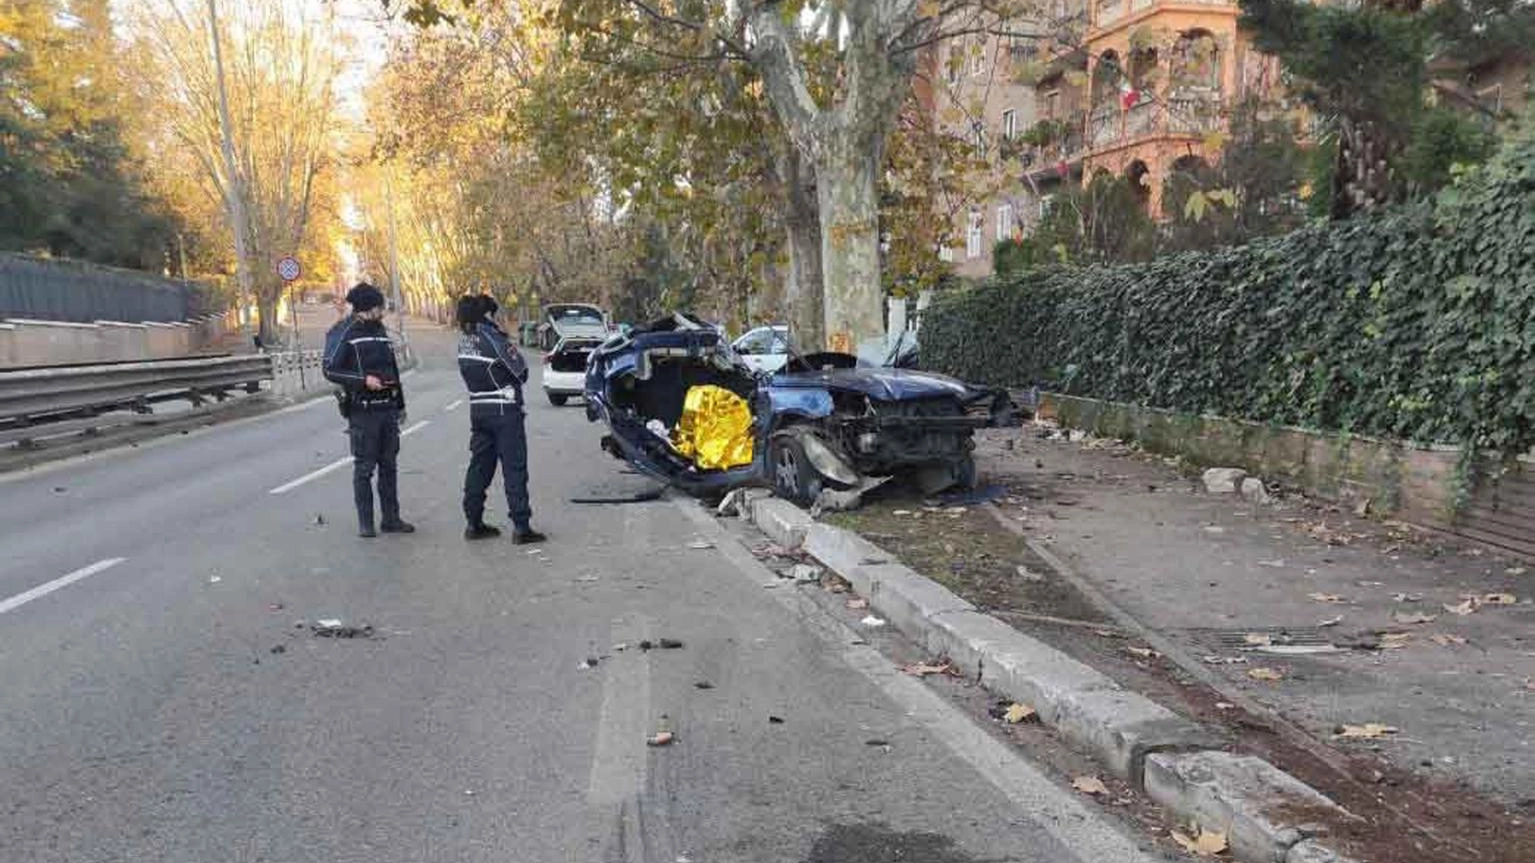 Travolto e ucciso da auto davanti villa Borghese a Roma